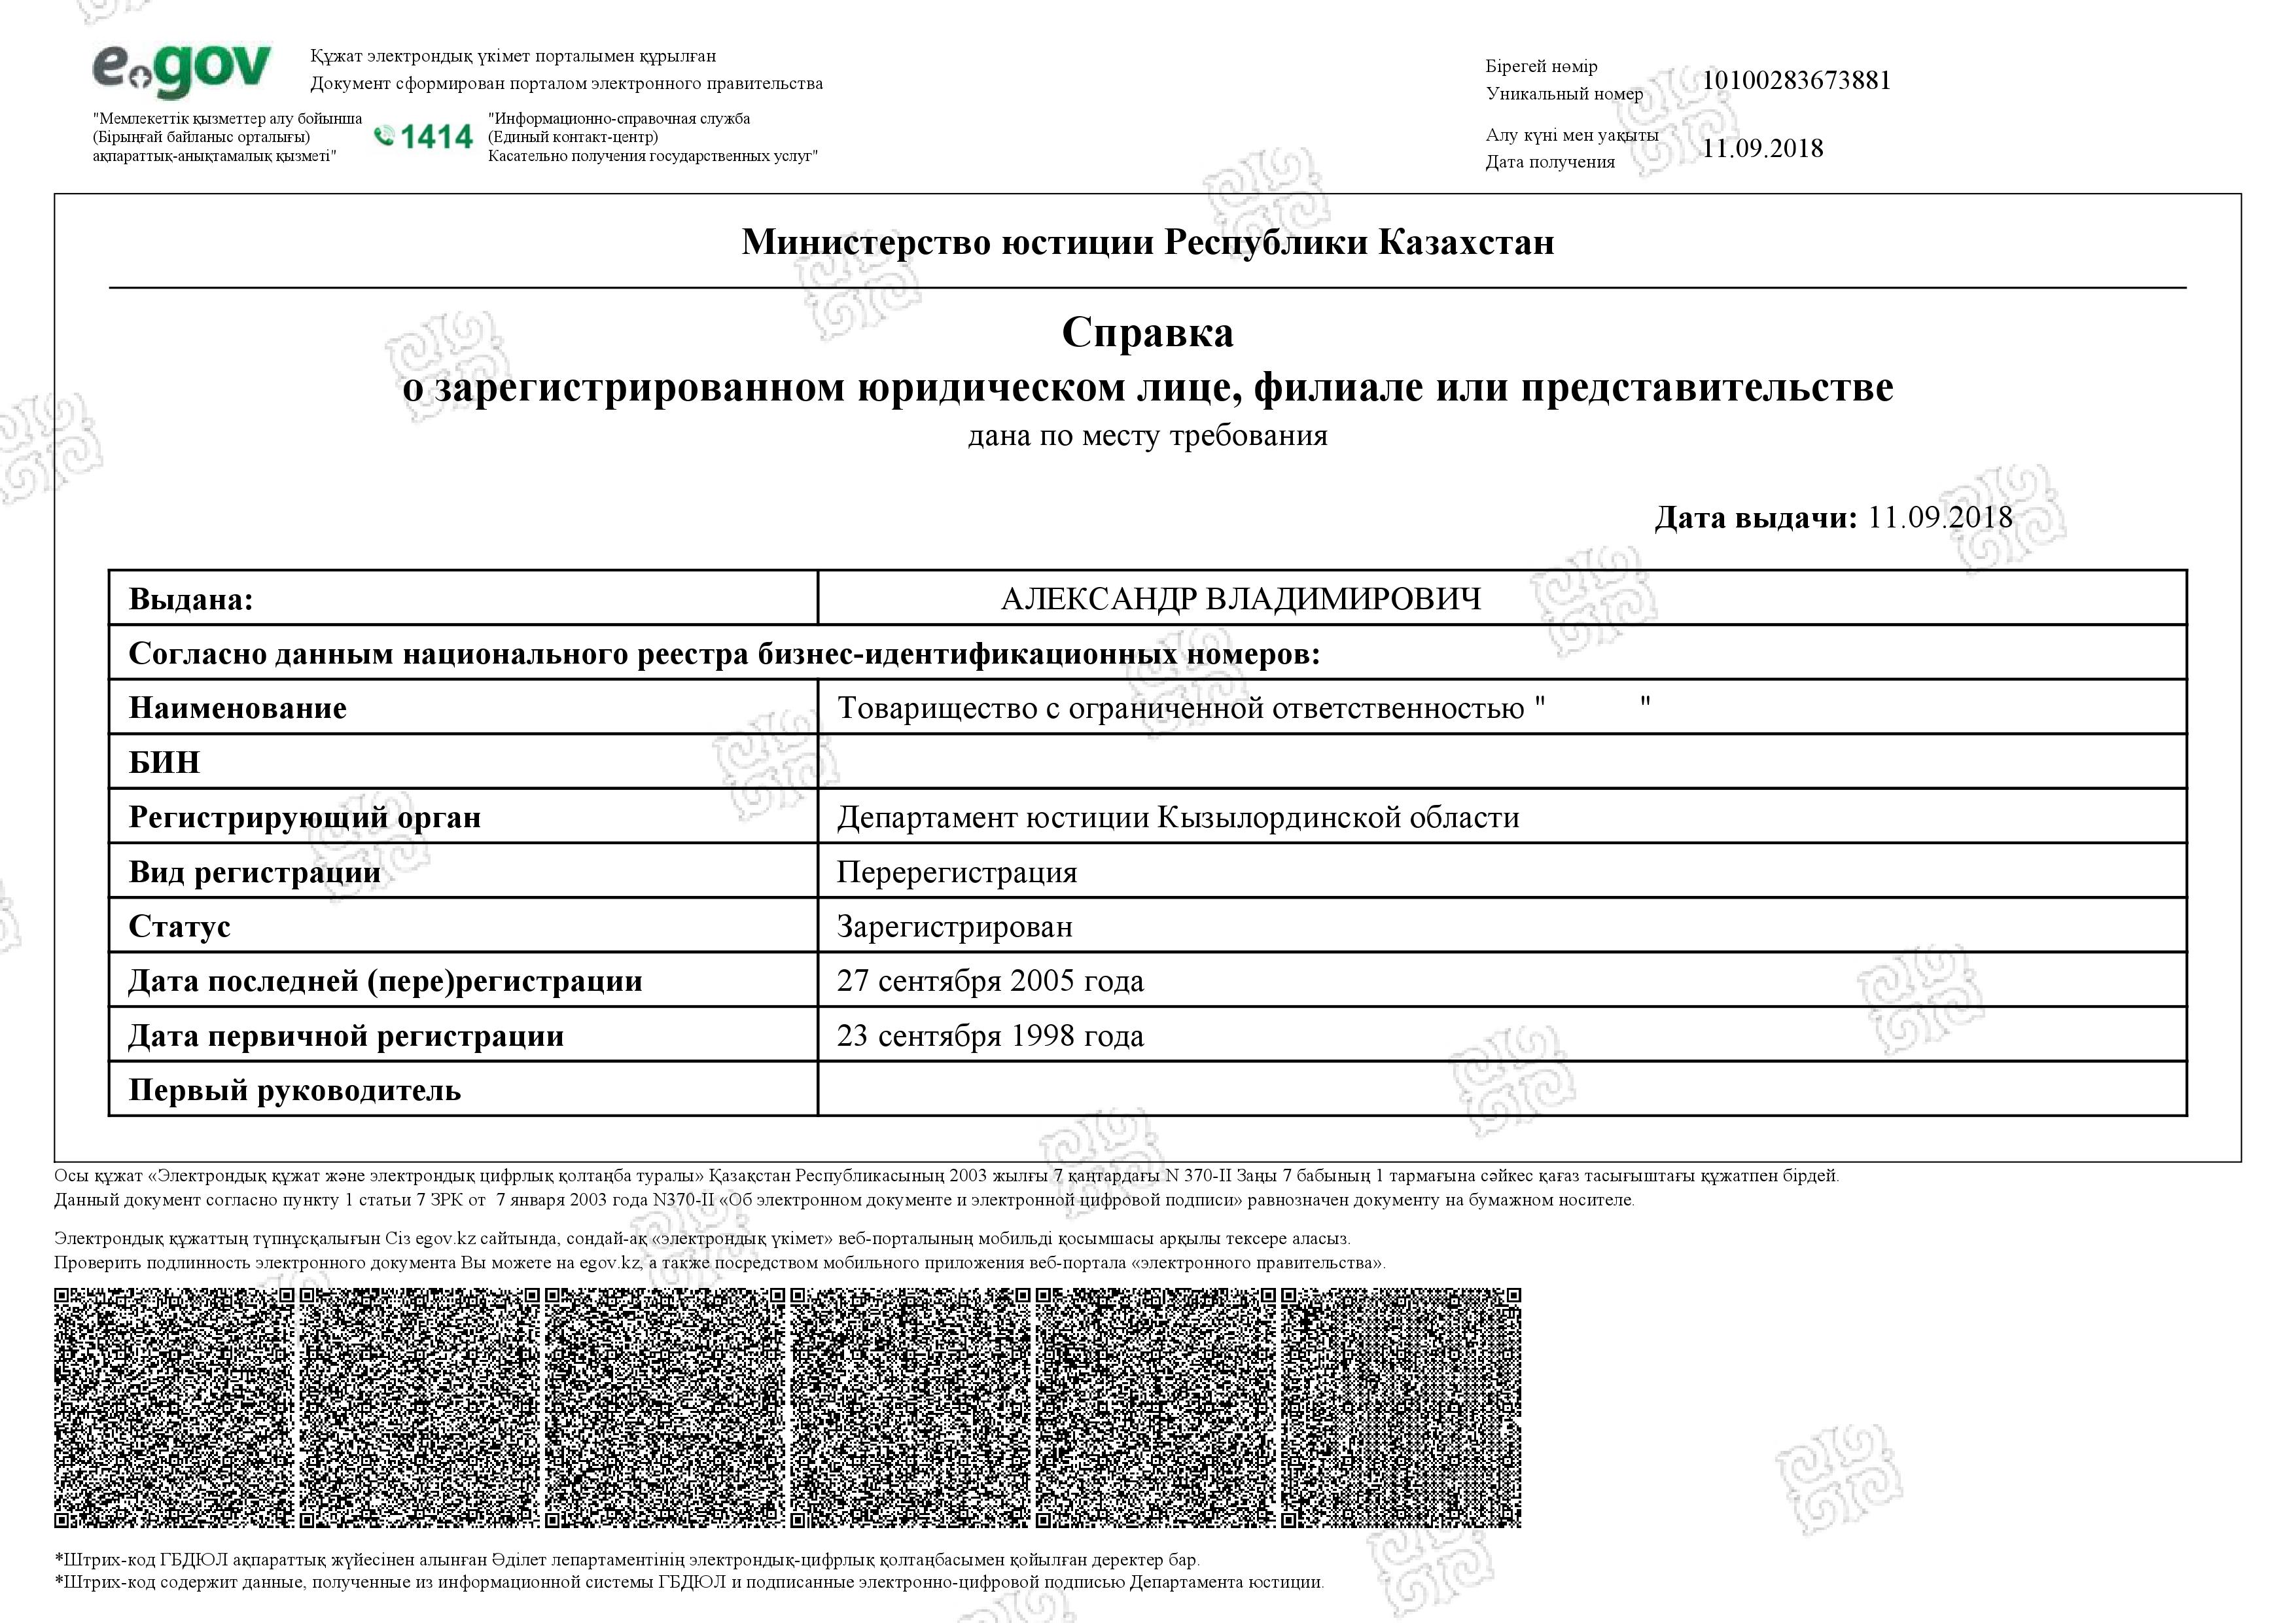 Сертифицированная выписка из реестра Казахстана